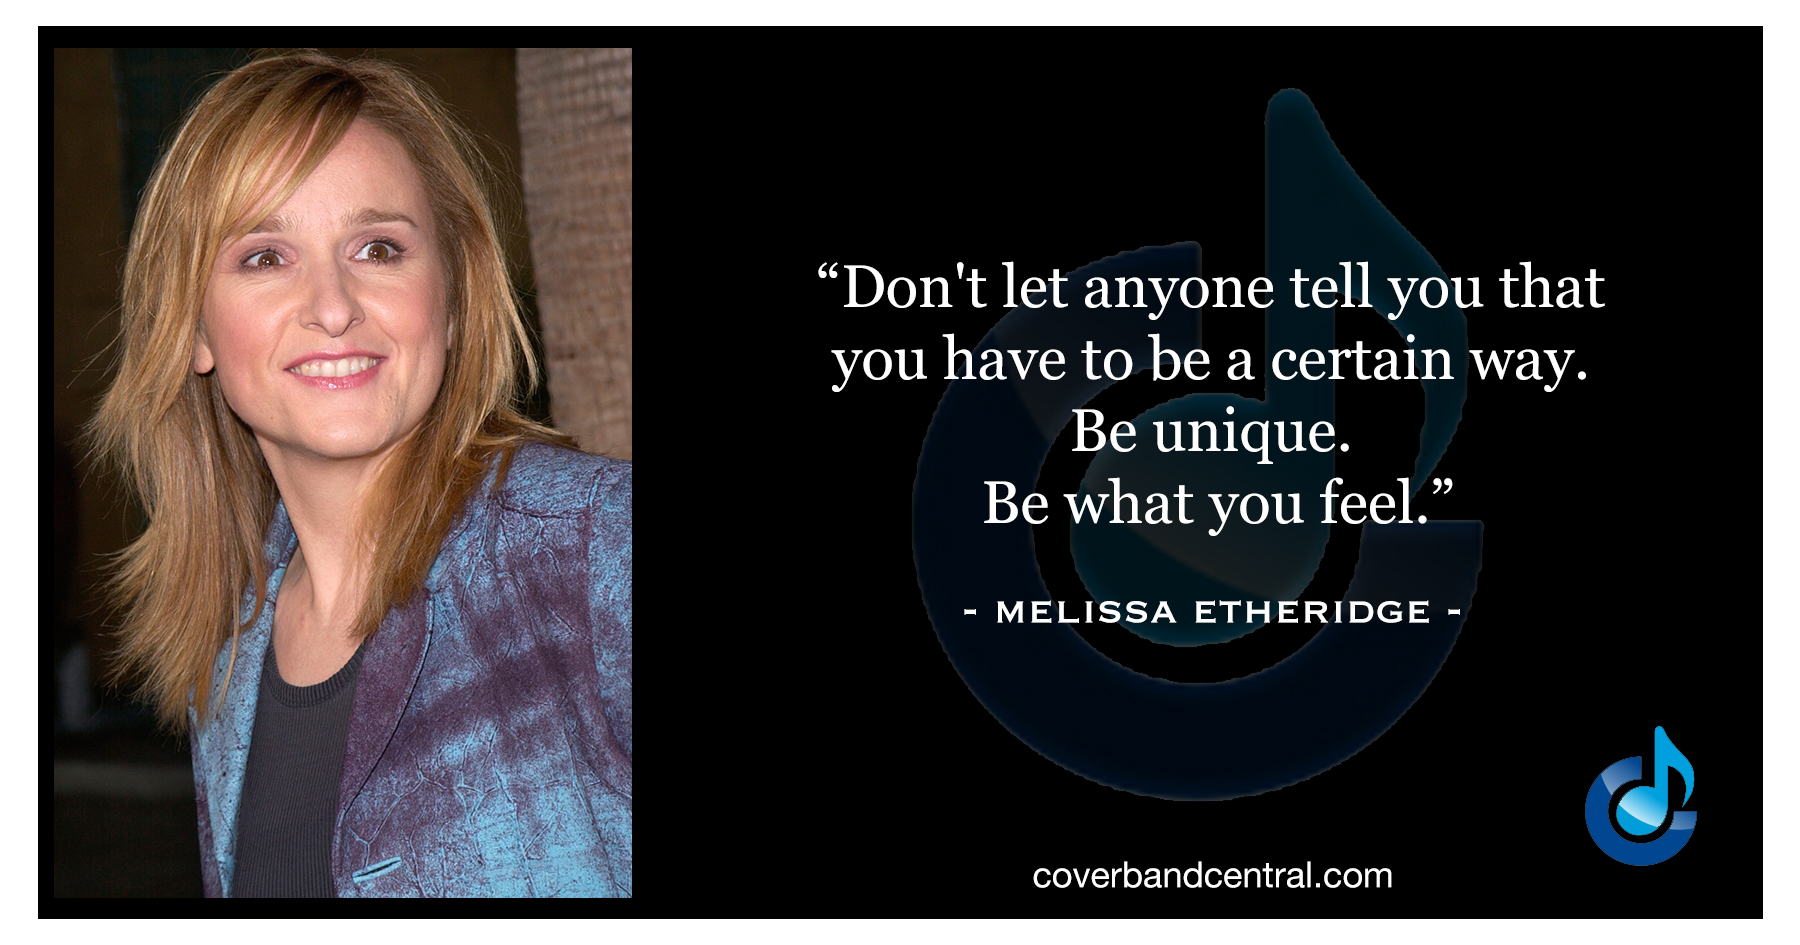 Melissa Etheridge quote